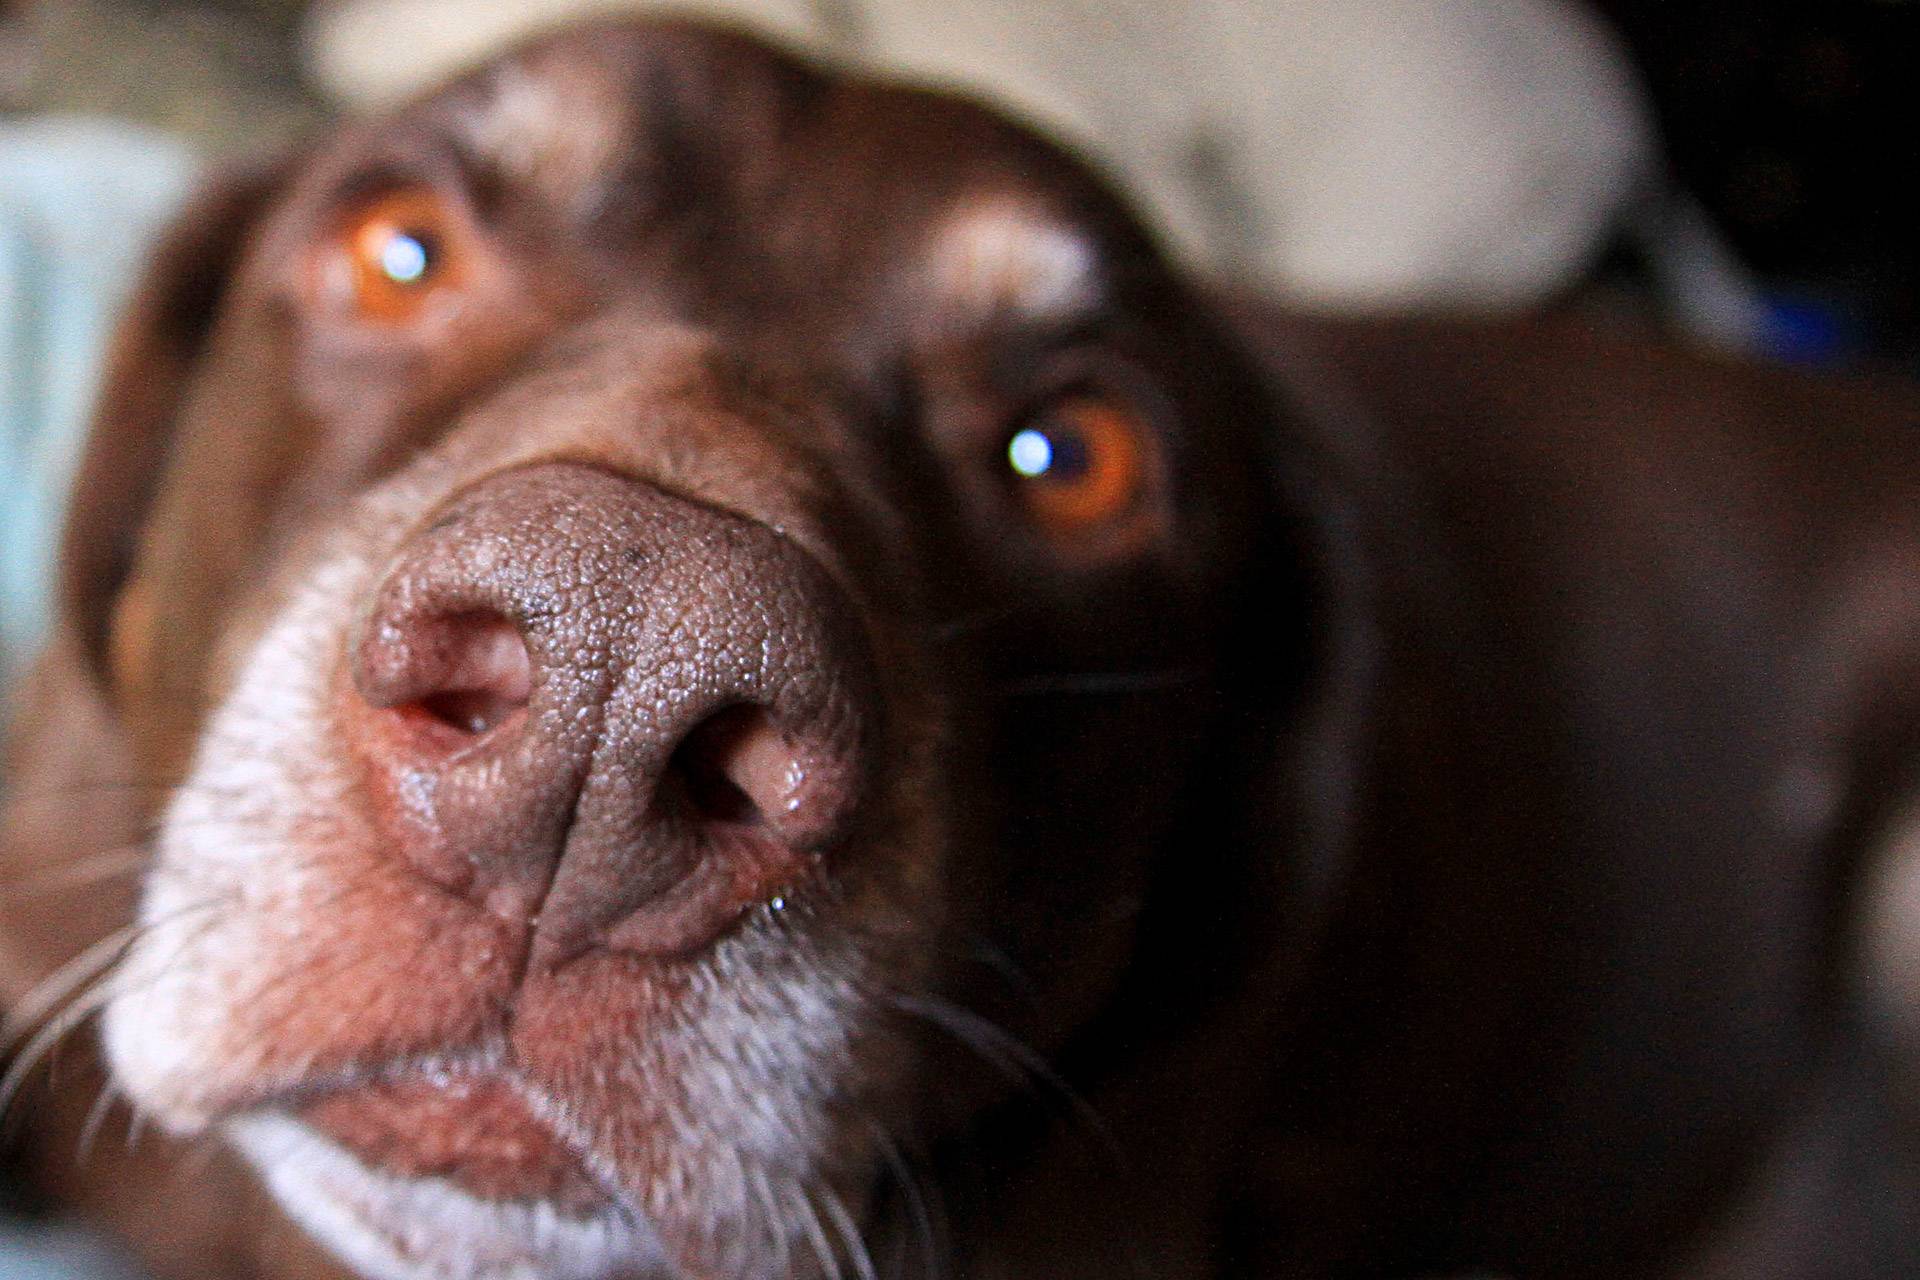 Горячий нос у собаки: что это значит, причины